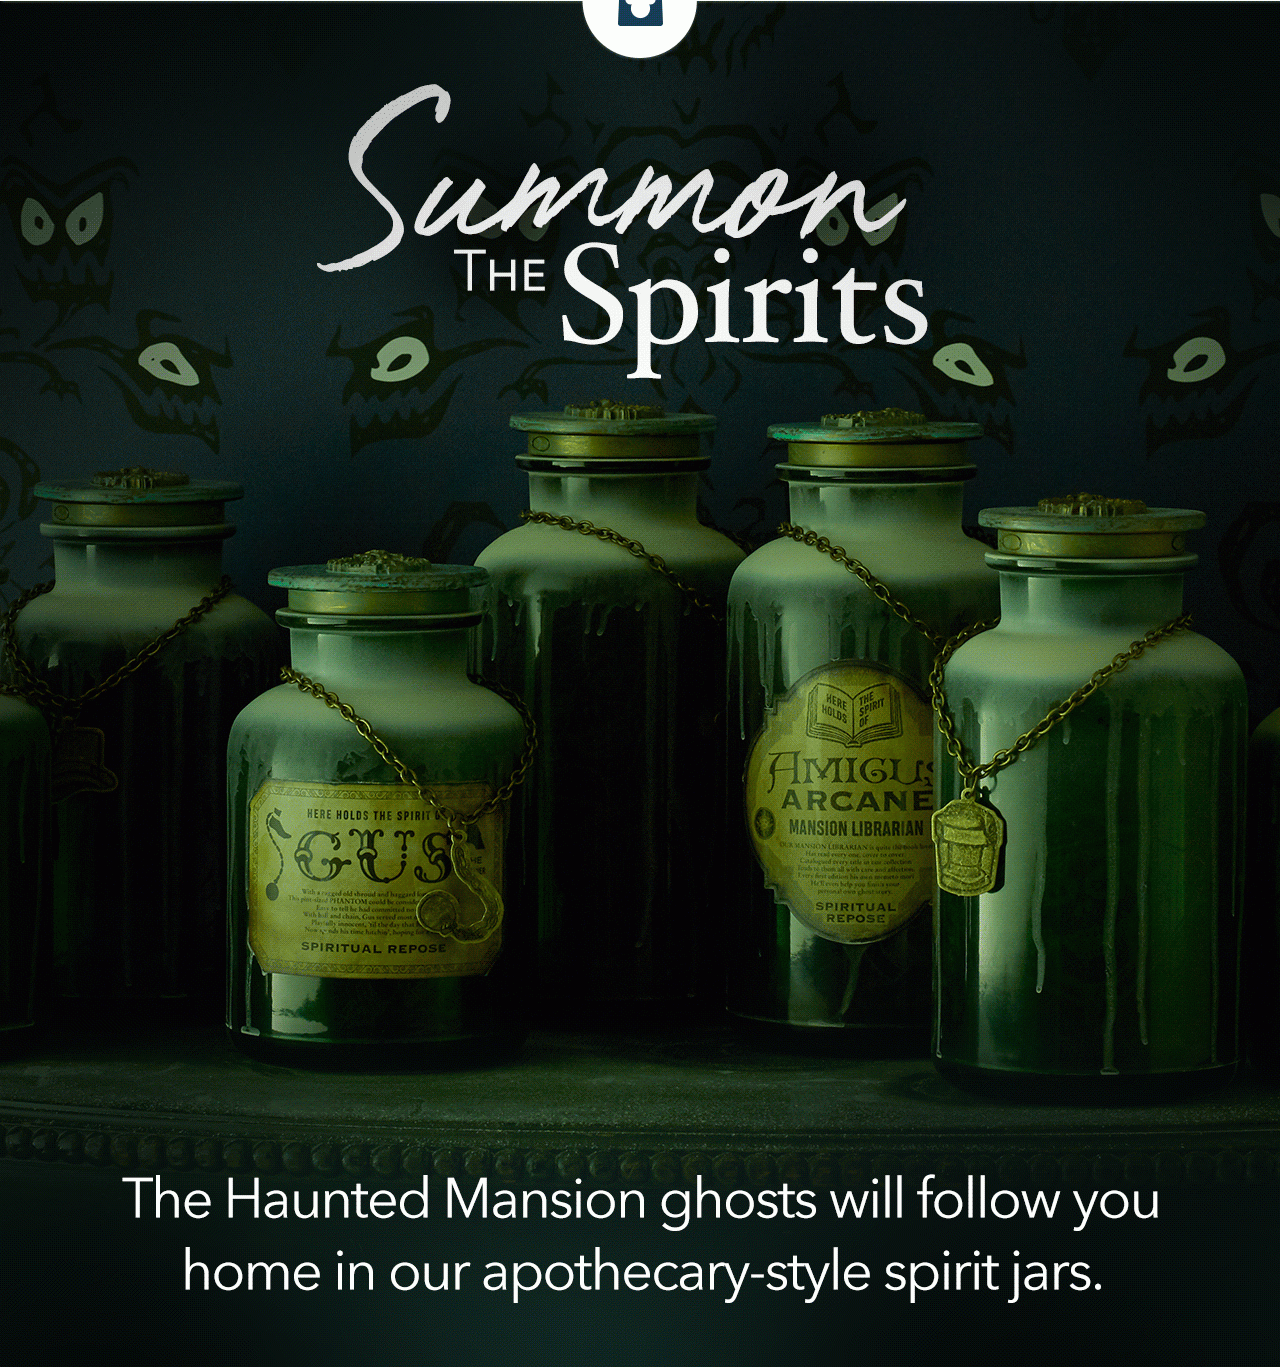 Summon the Spirits